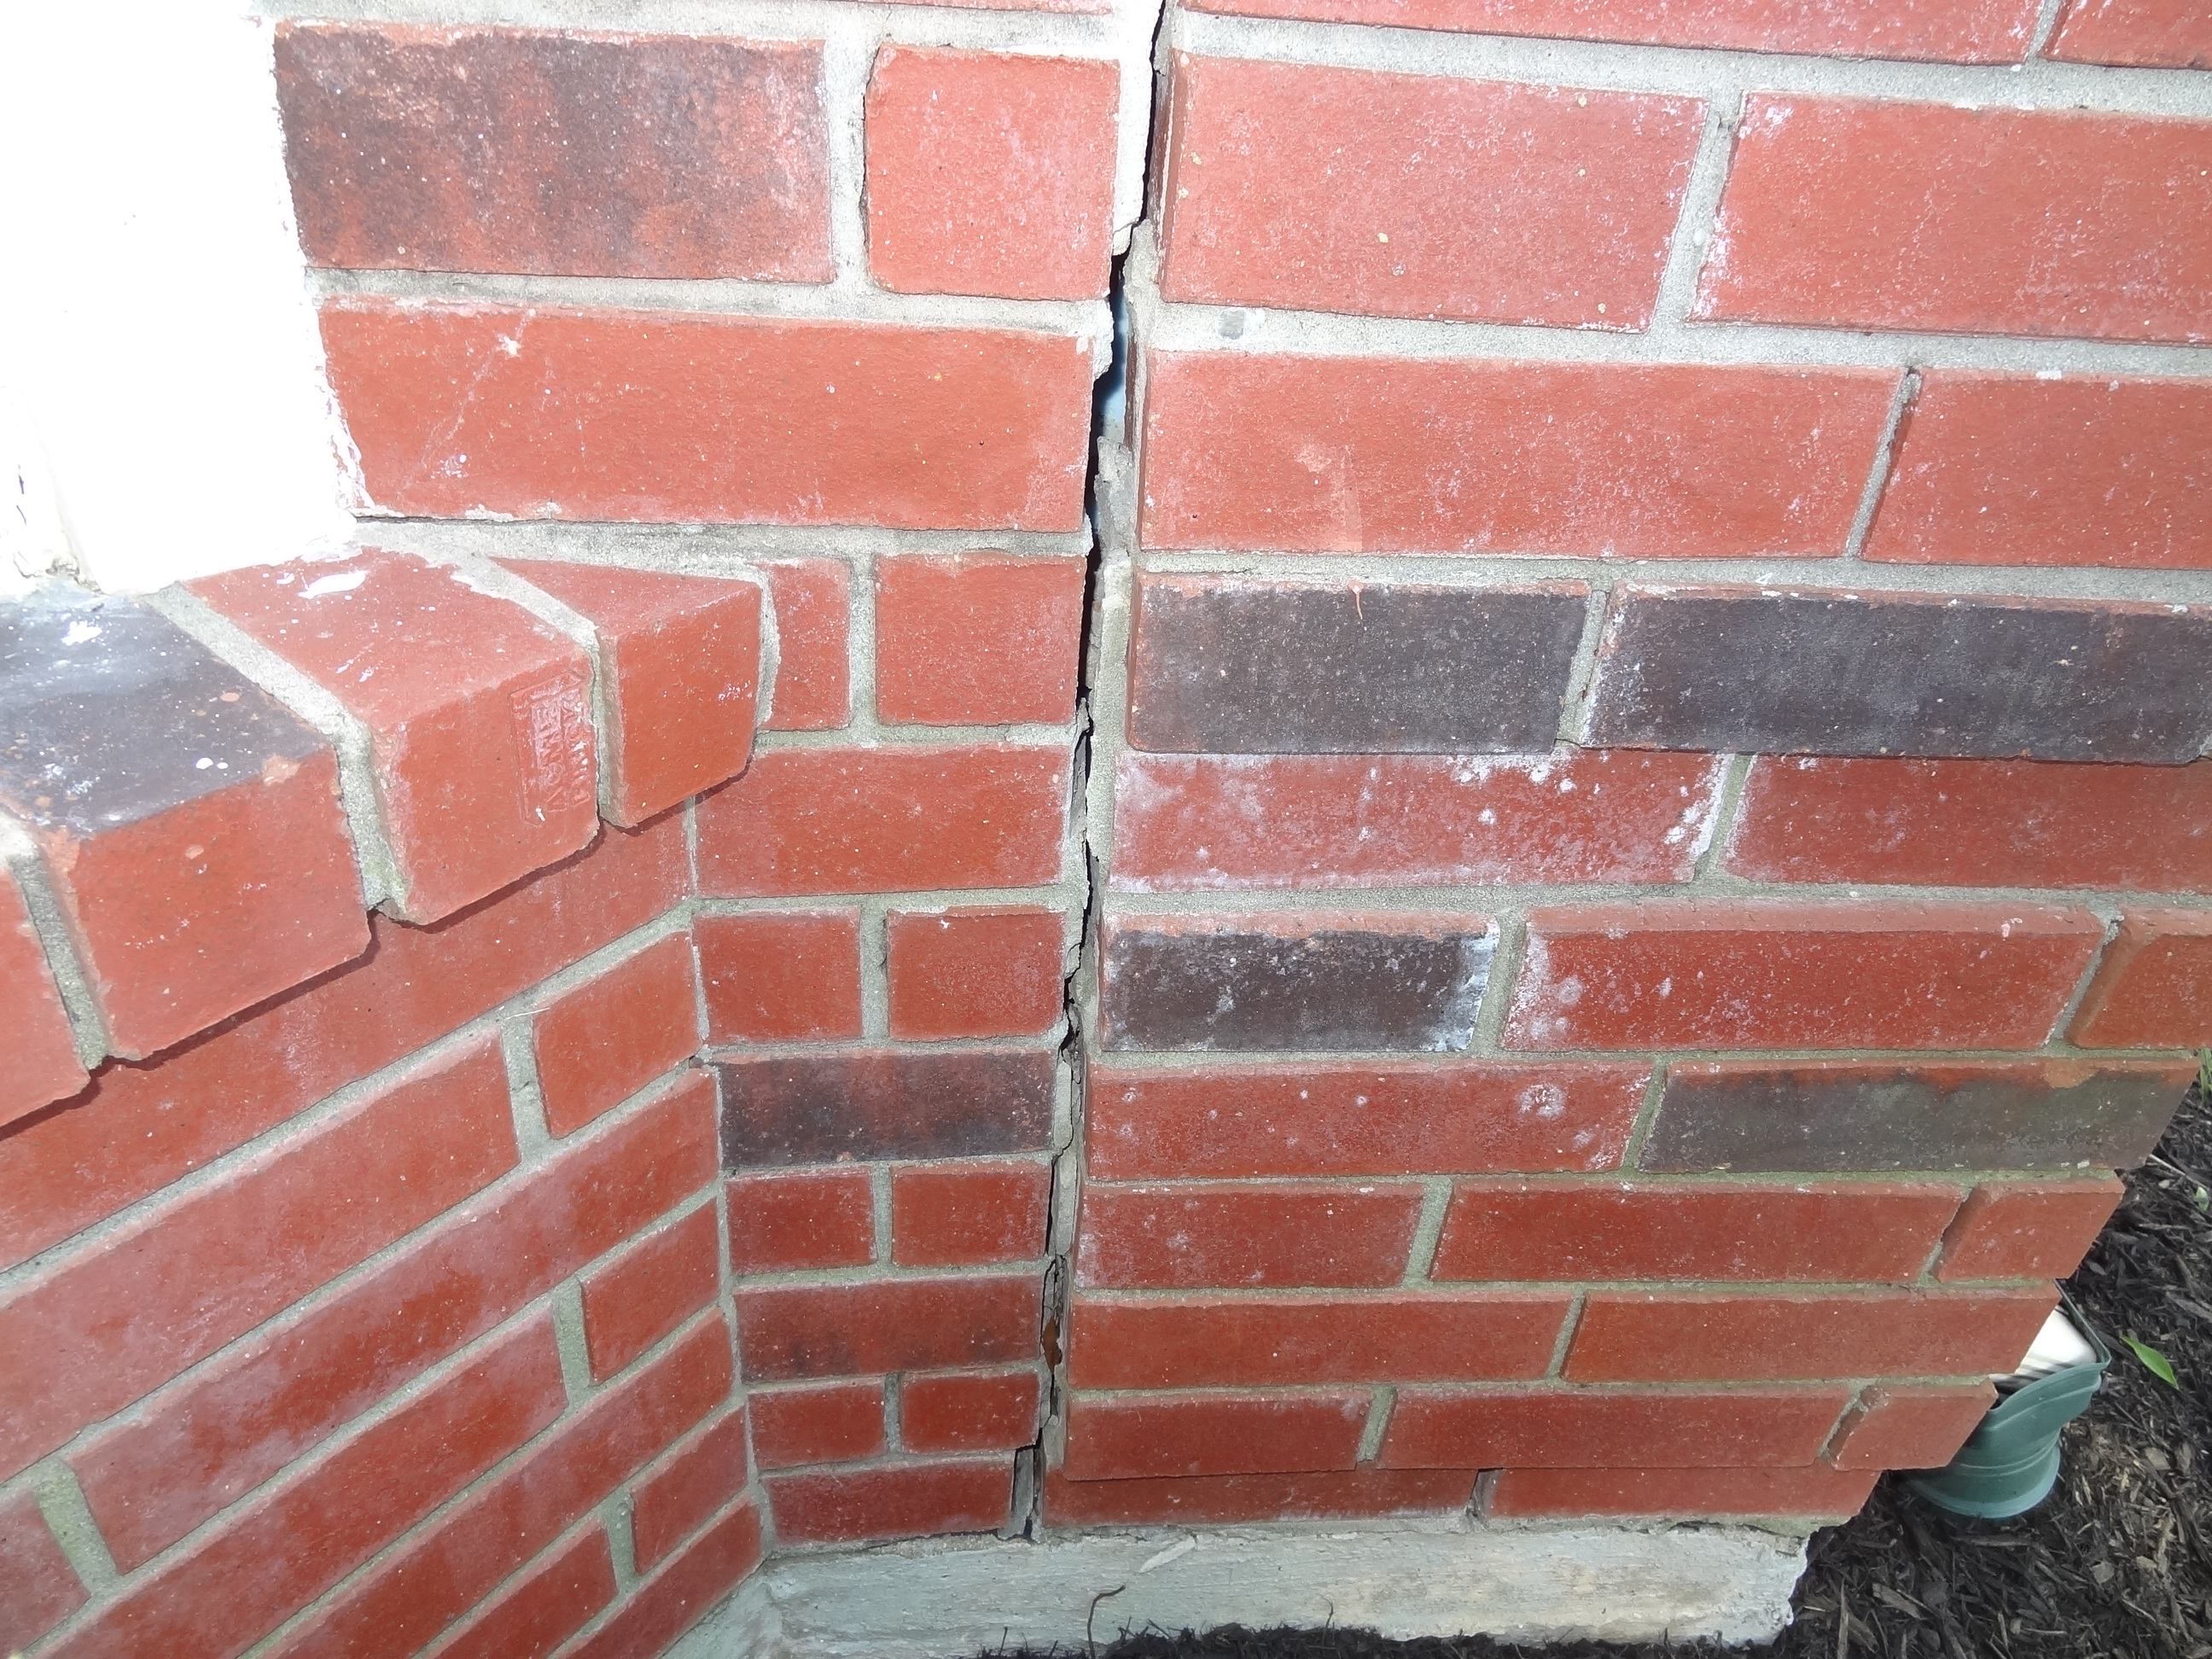 Brick Repairs in Katy Area